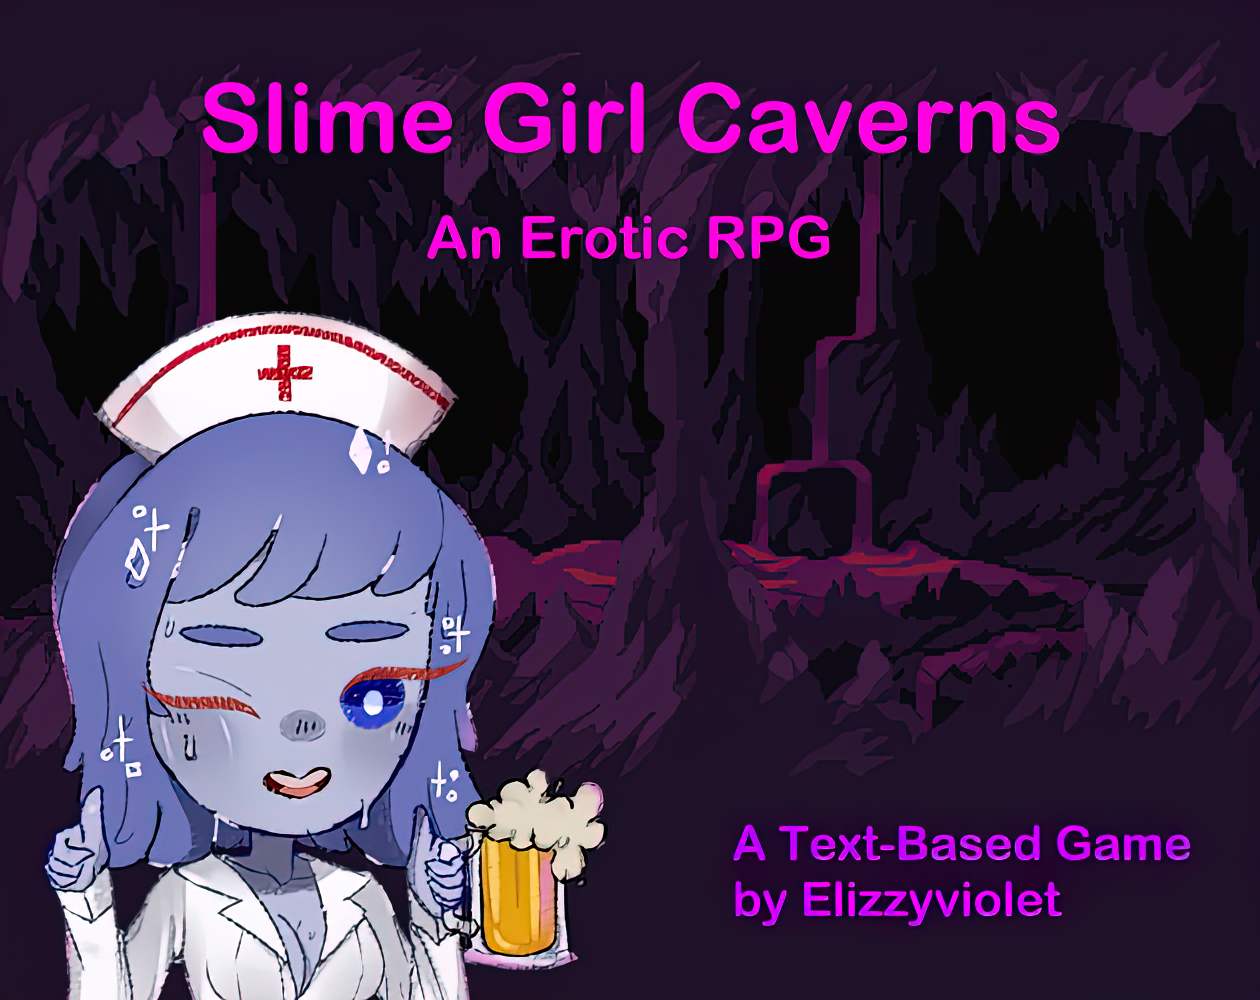 Slime Girl Caverns